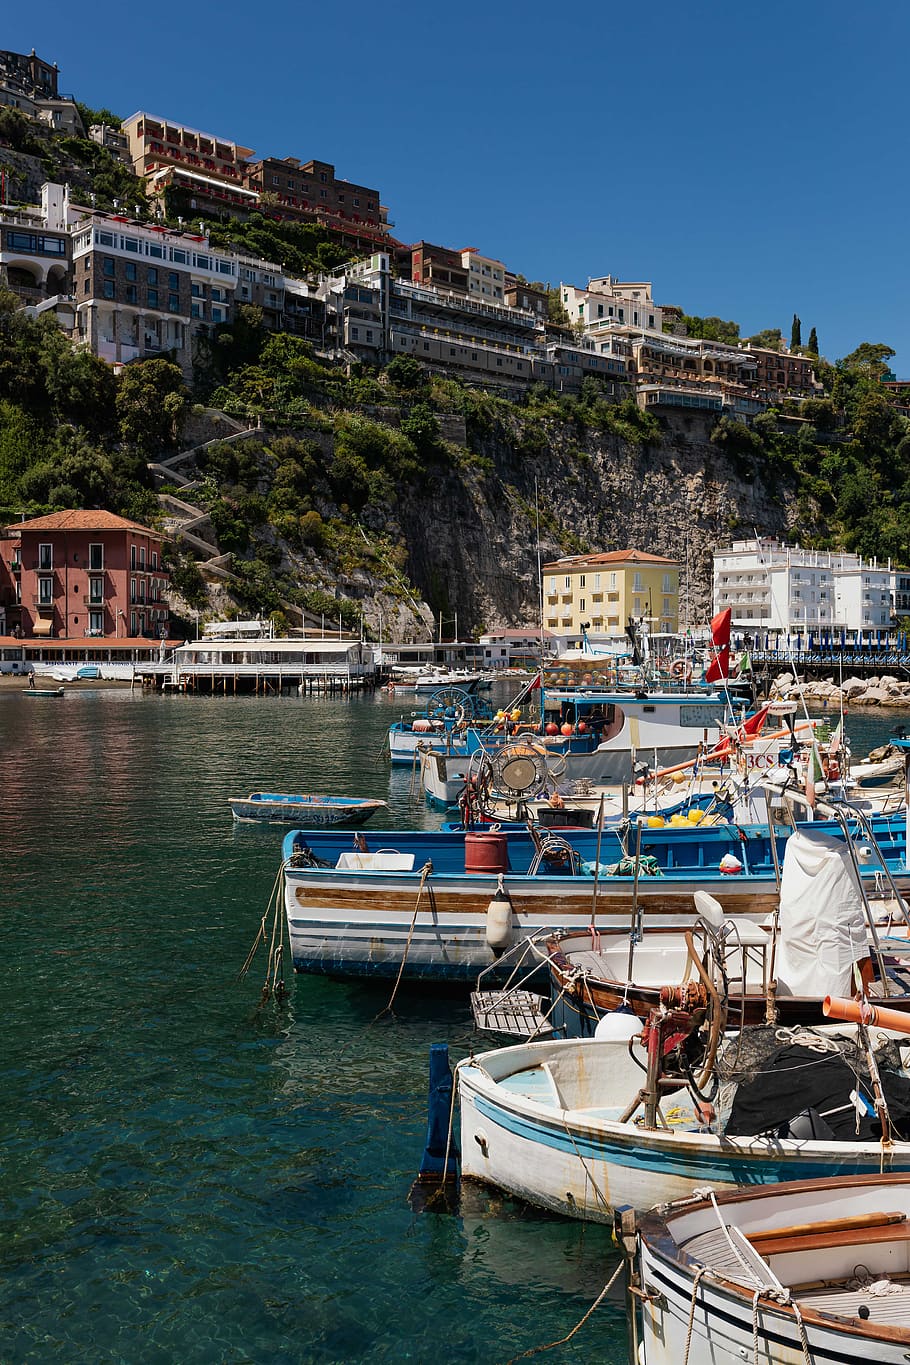 Italia, Eropa, biaya, amalfi, perjalanan, campania, Laut Tyrrhenian, Sorrento, kapal laut, air